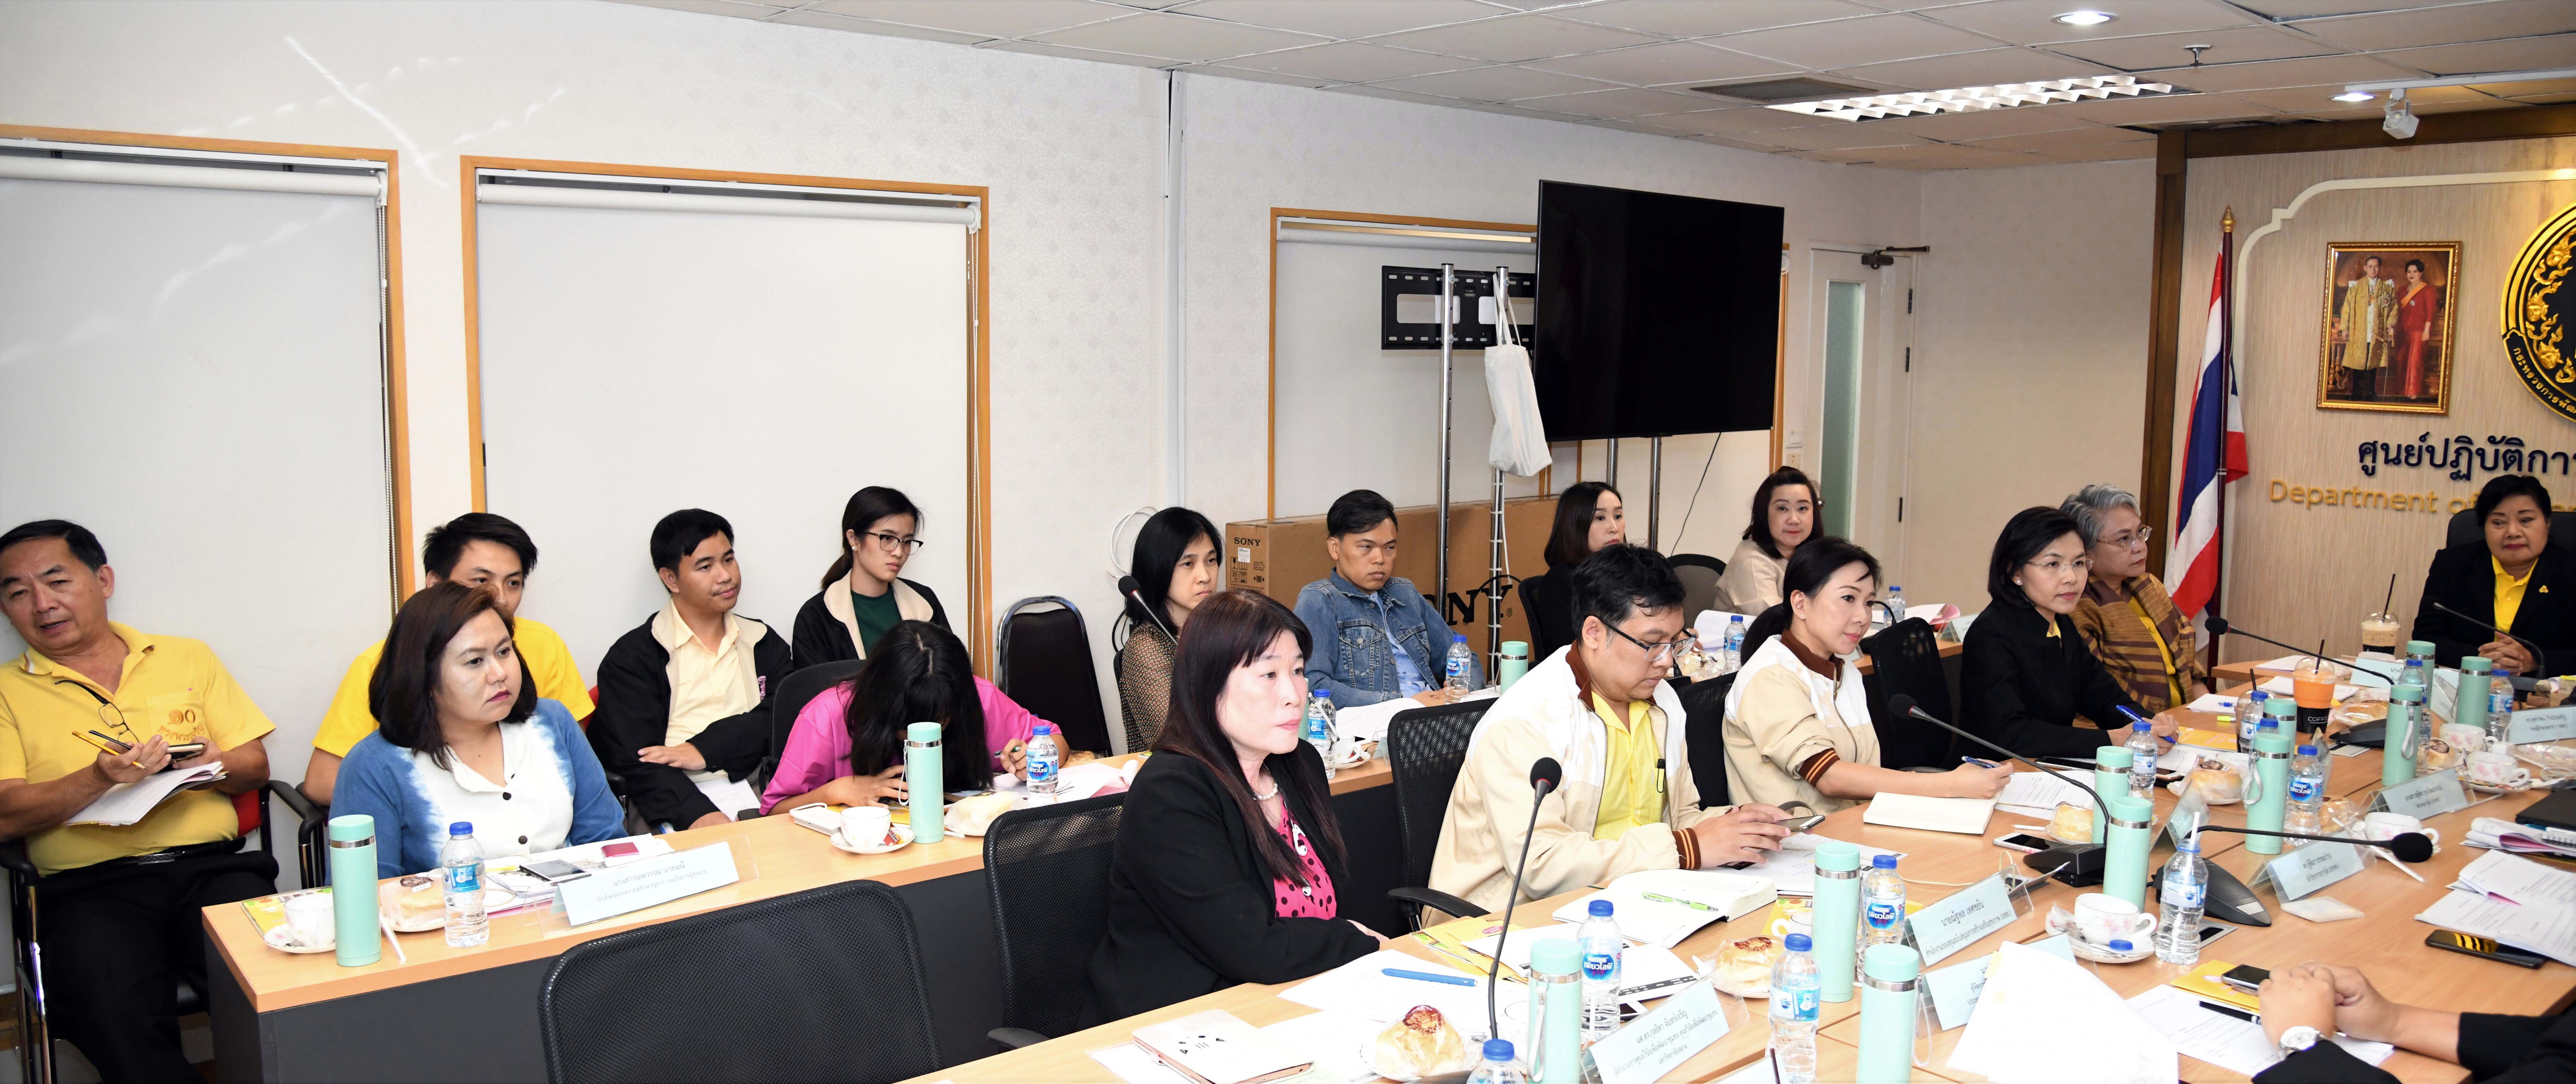 ประชุมหารือแนวทางการพัฒนาระบบซอฟต์แวร์โครงการธนาคารเวลาเพื่อการดูแลผู้สูงอายุของประเทศไทย 